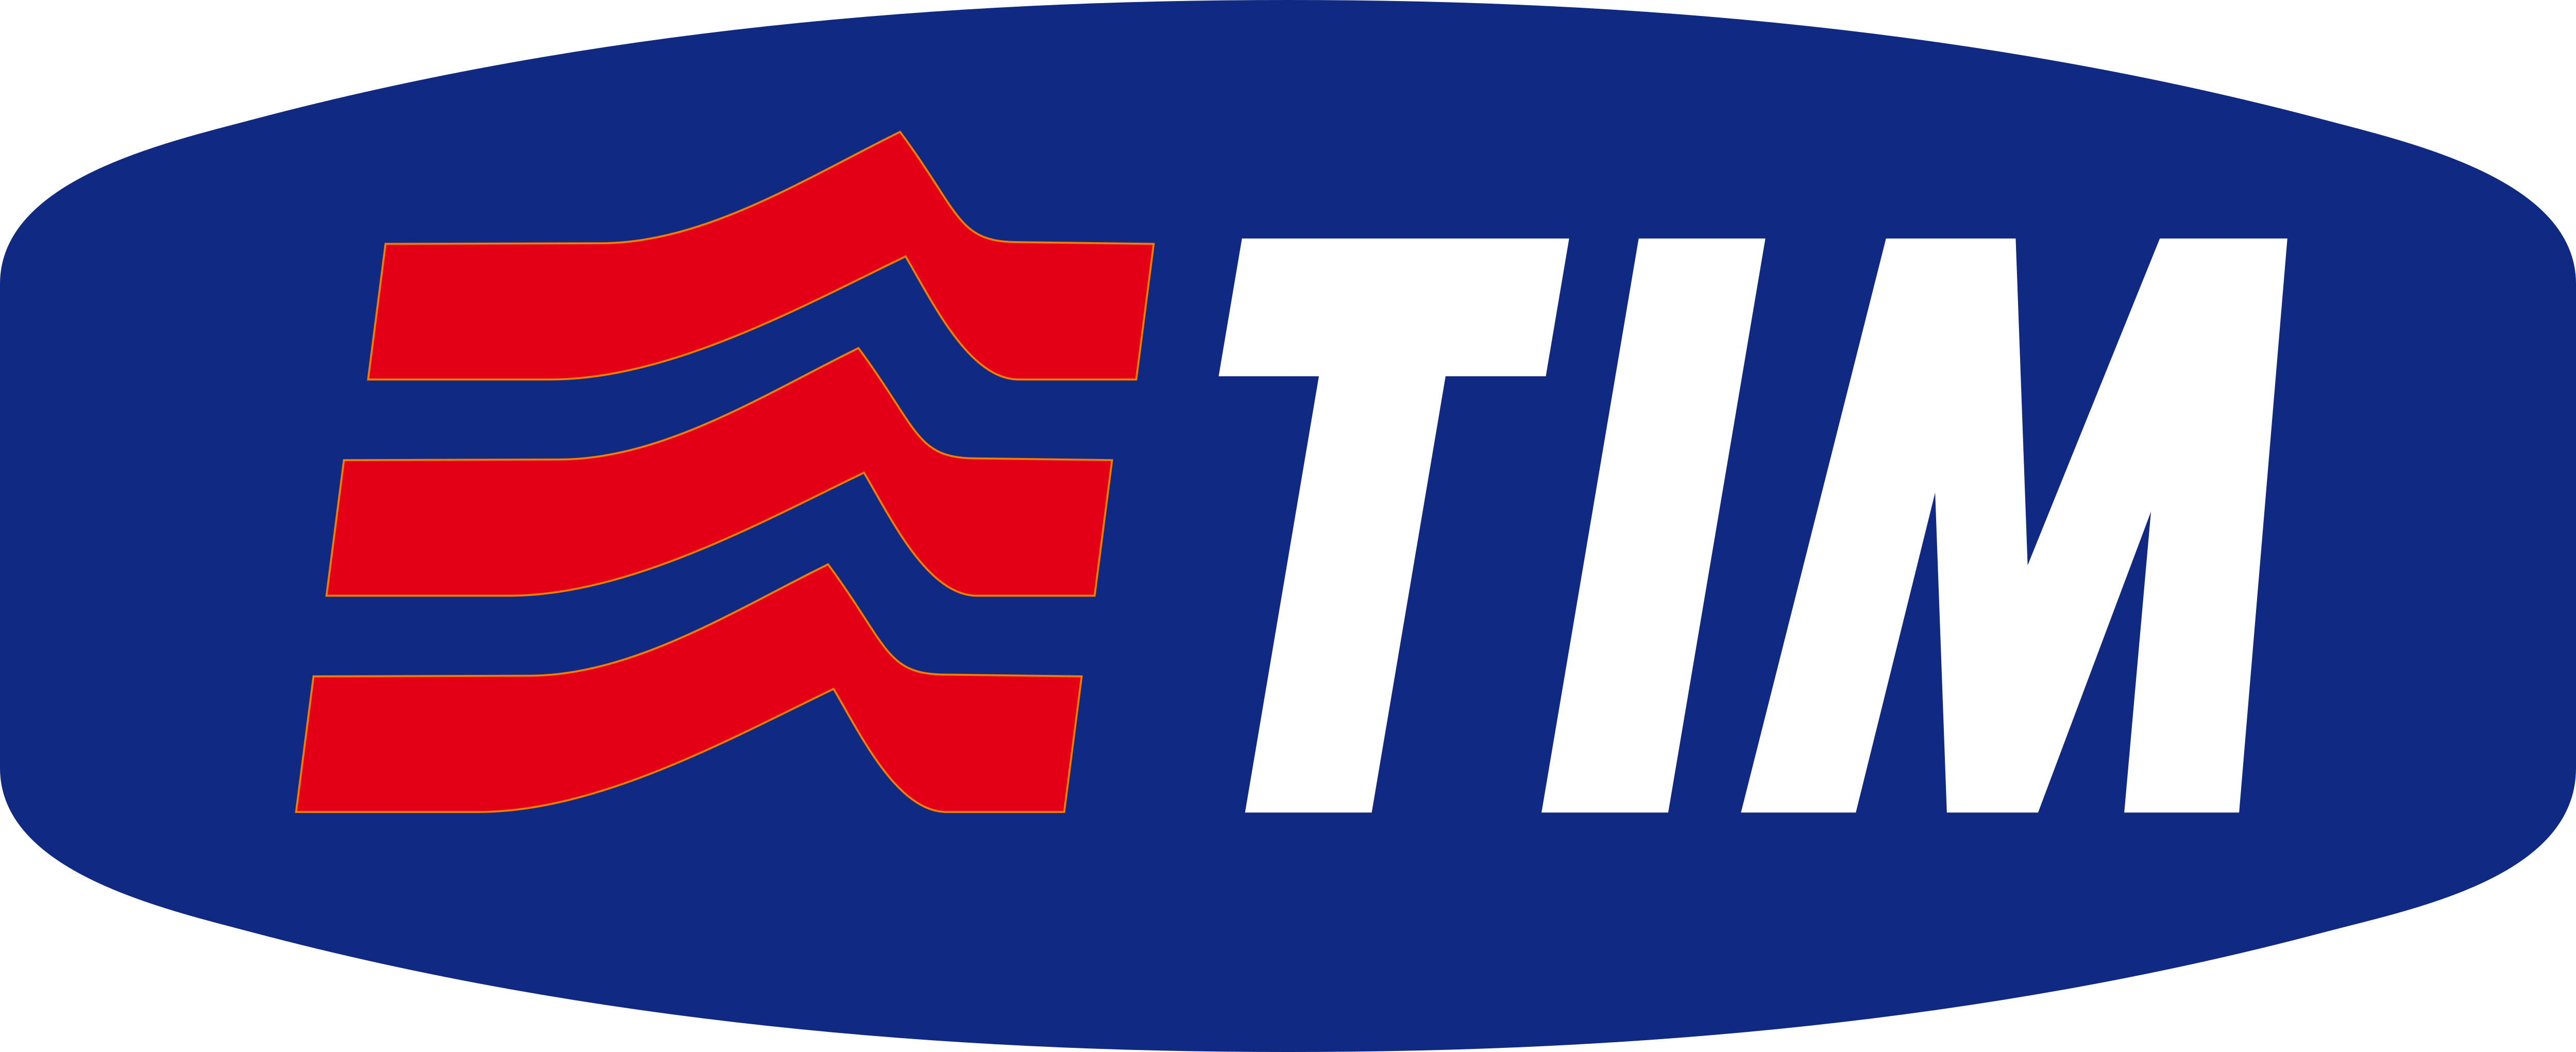 Telekom Italia